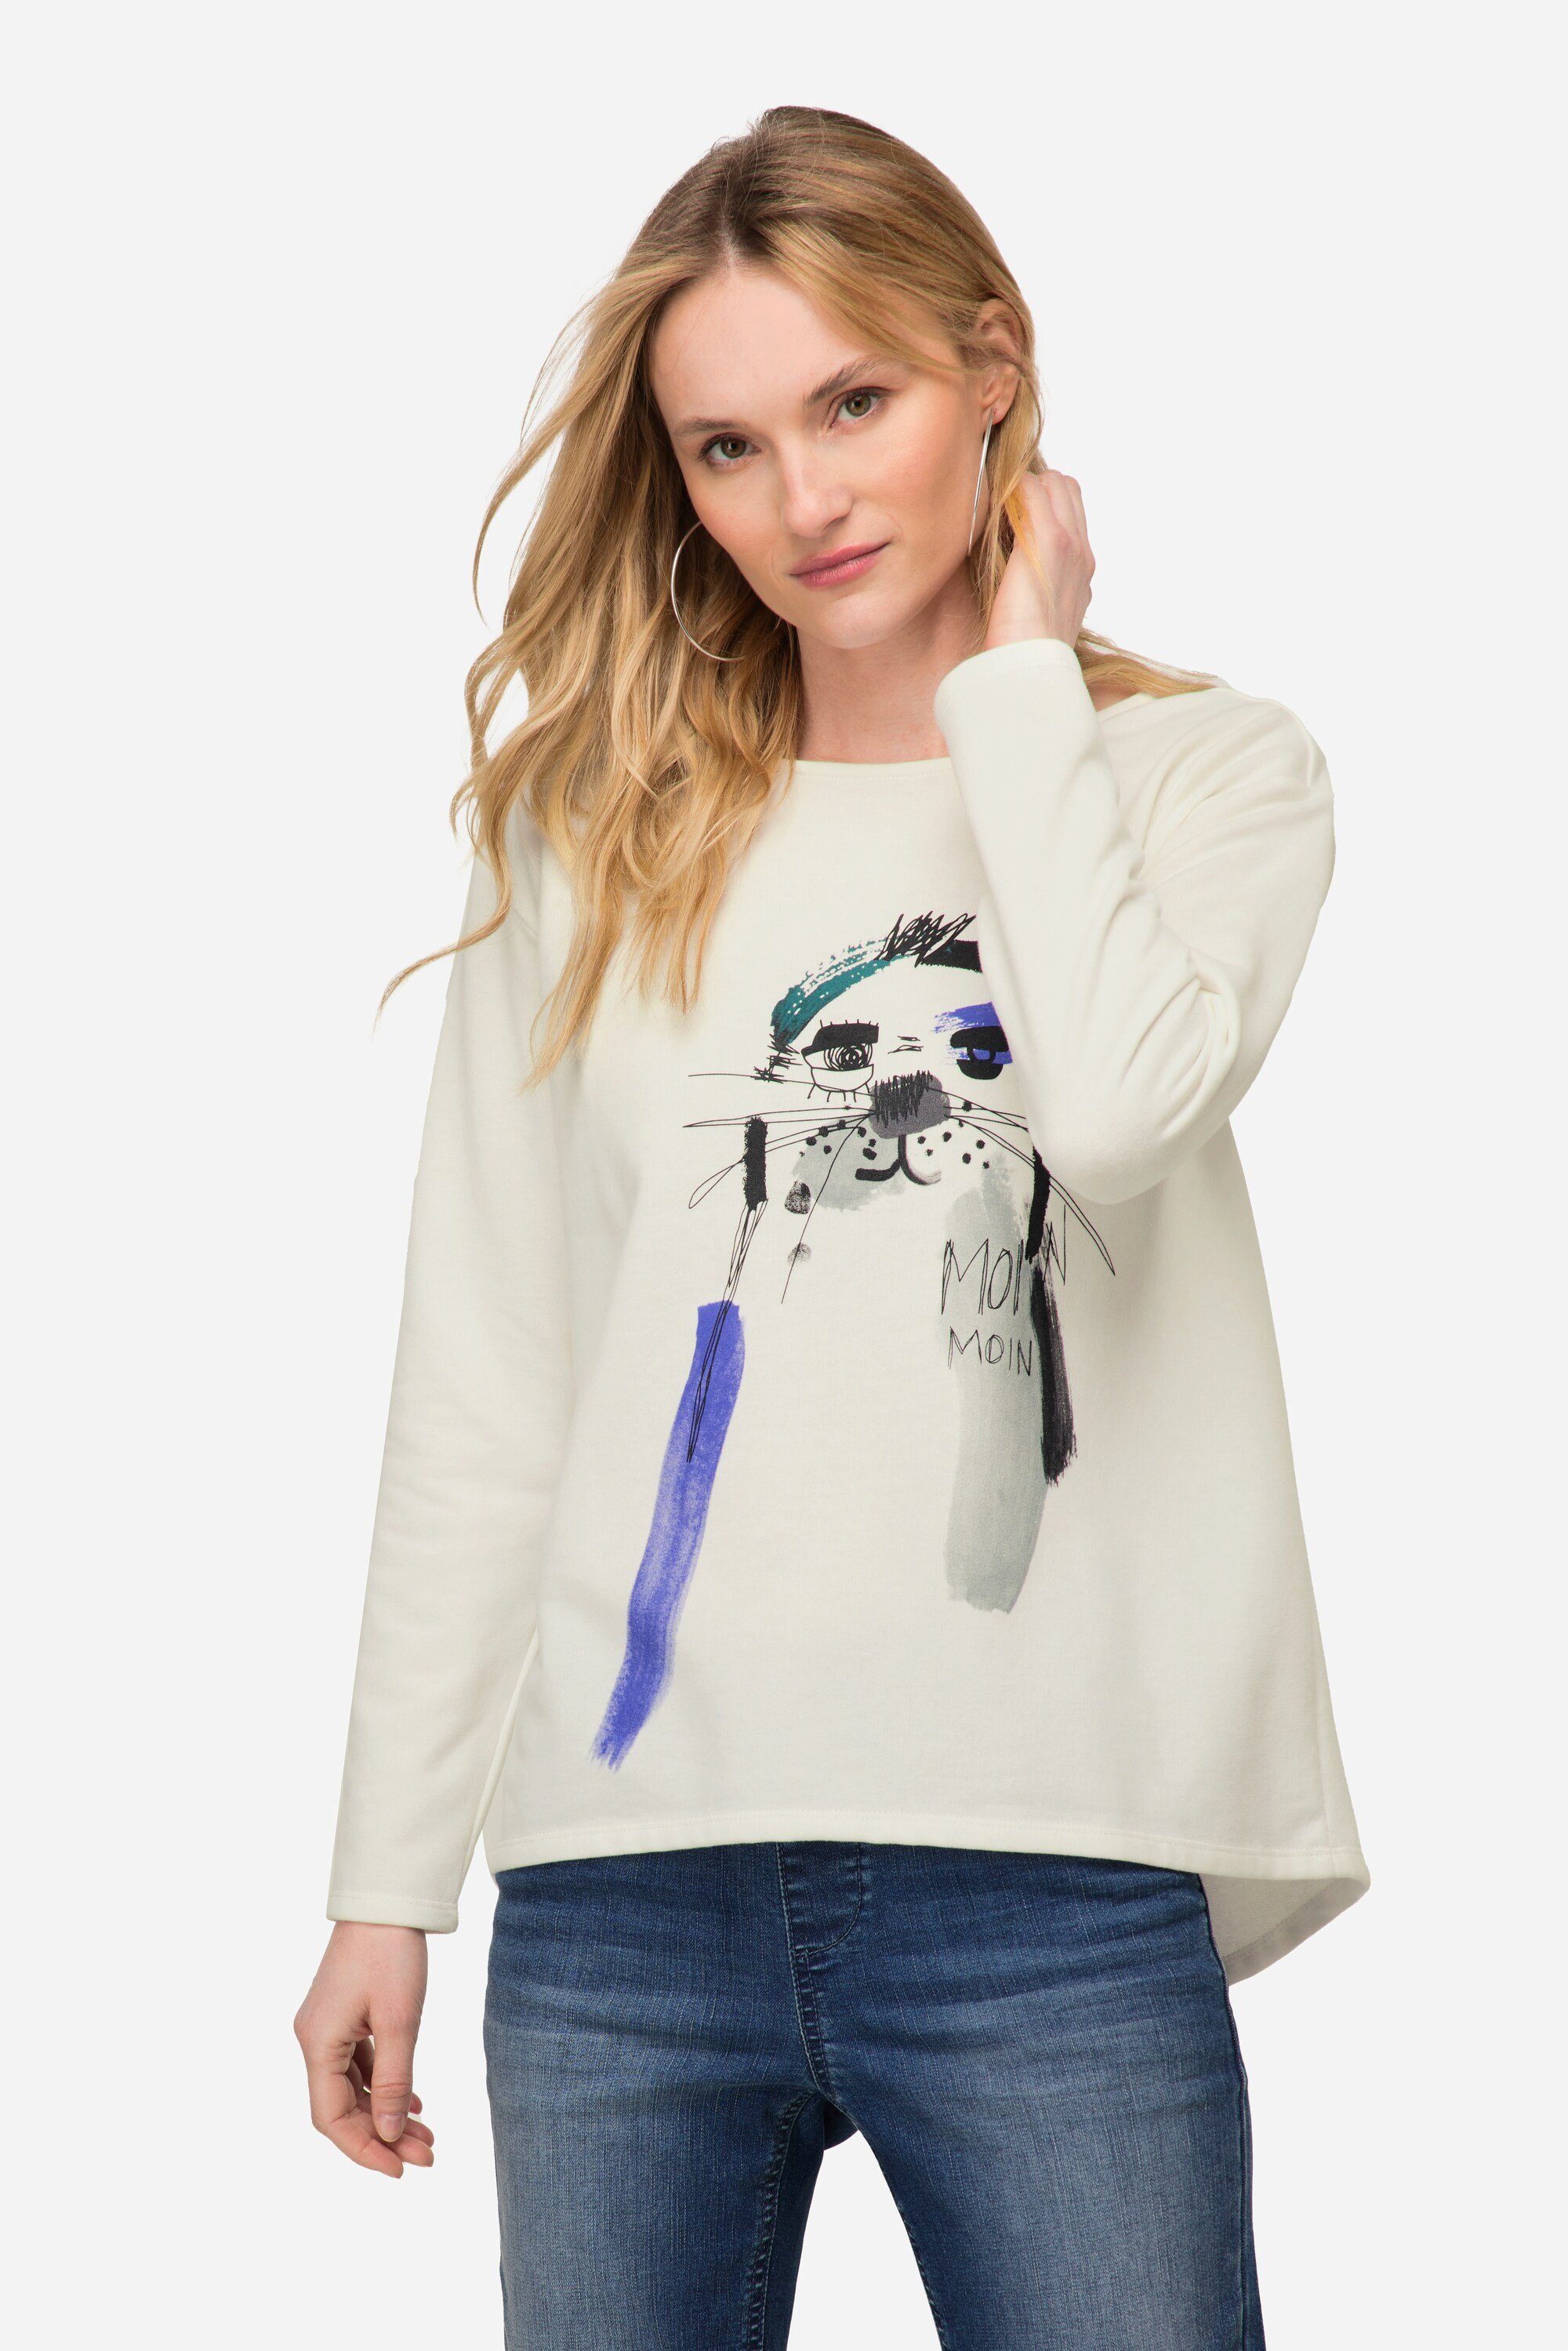 Laurasøn Sweatshirt Sweatshirt oversized Robben Print Rundhals Langarm offwhite